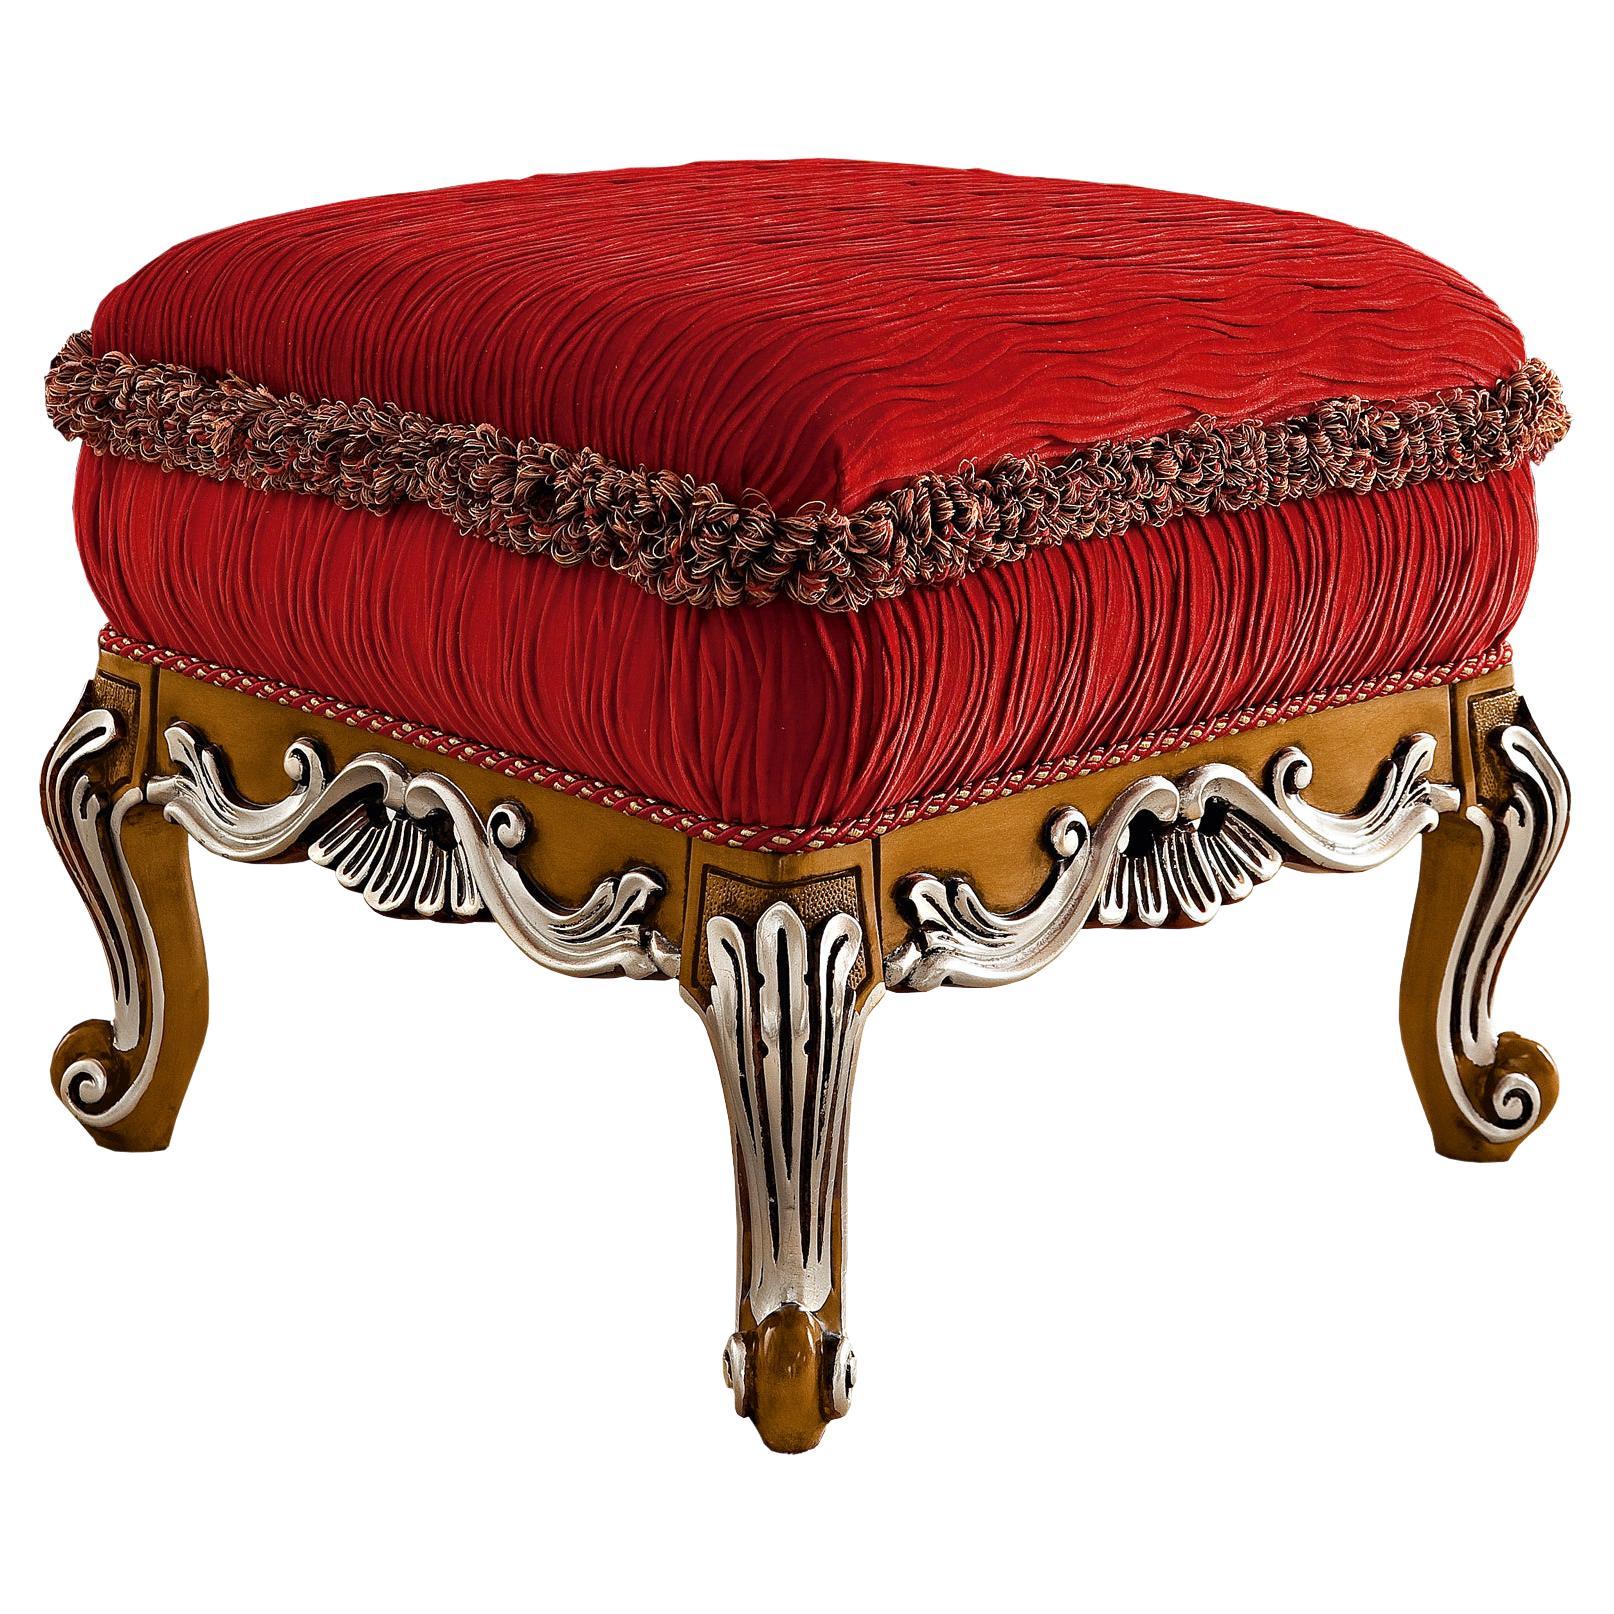 Roter Barock-Ottoman des 21. Jahrhunderts von Modenese Gastone, inspiriert vom Barock